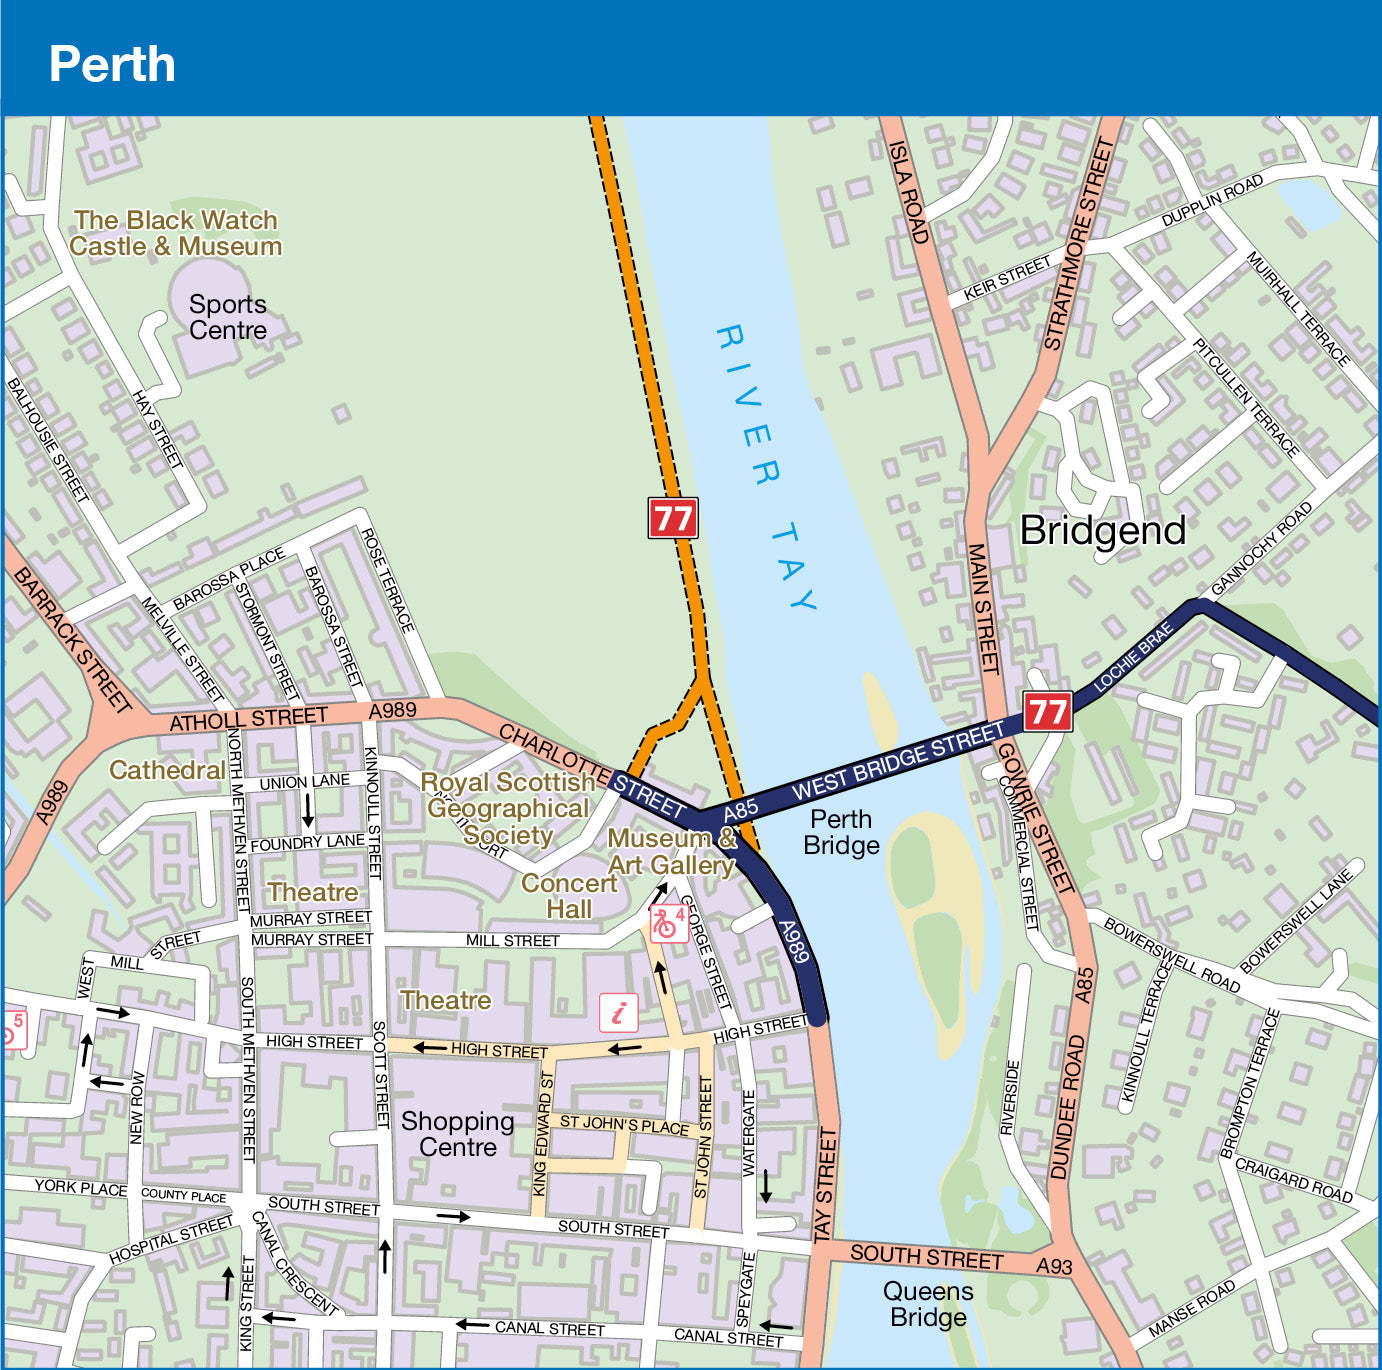 Map sample of Perth